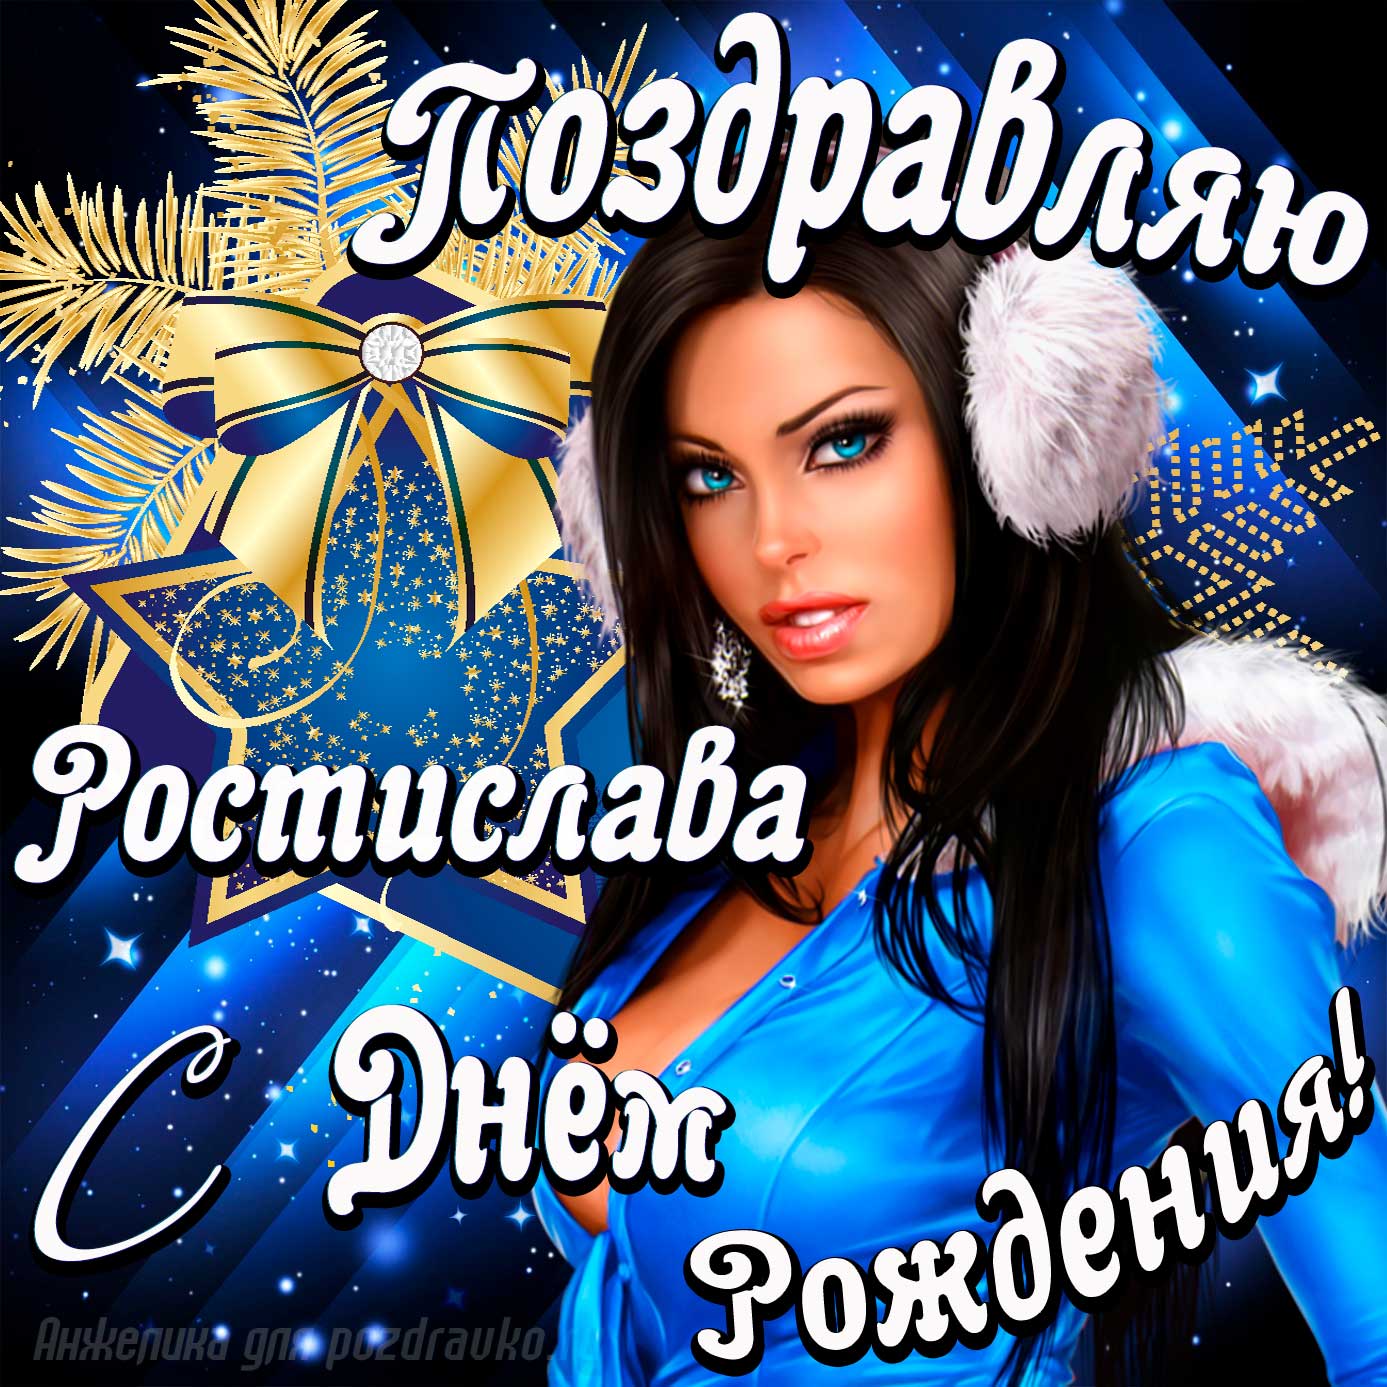 Открытка - поздравление Ростиславу с Днем Рождения с красивой девушкой. Скачать бесплатно или отправить картинку.